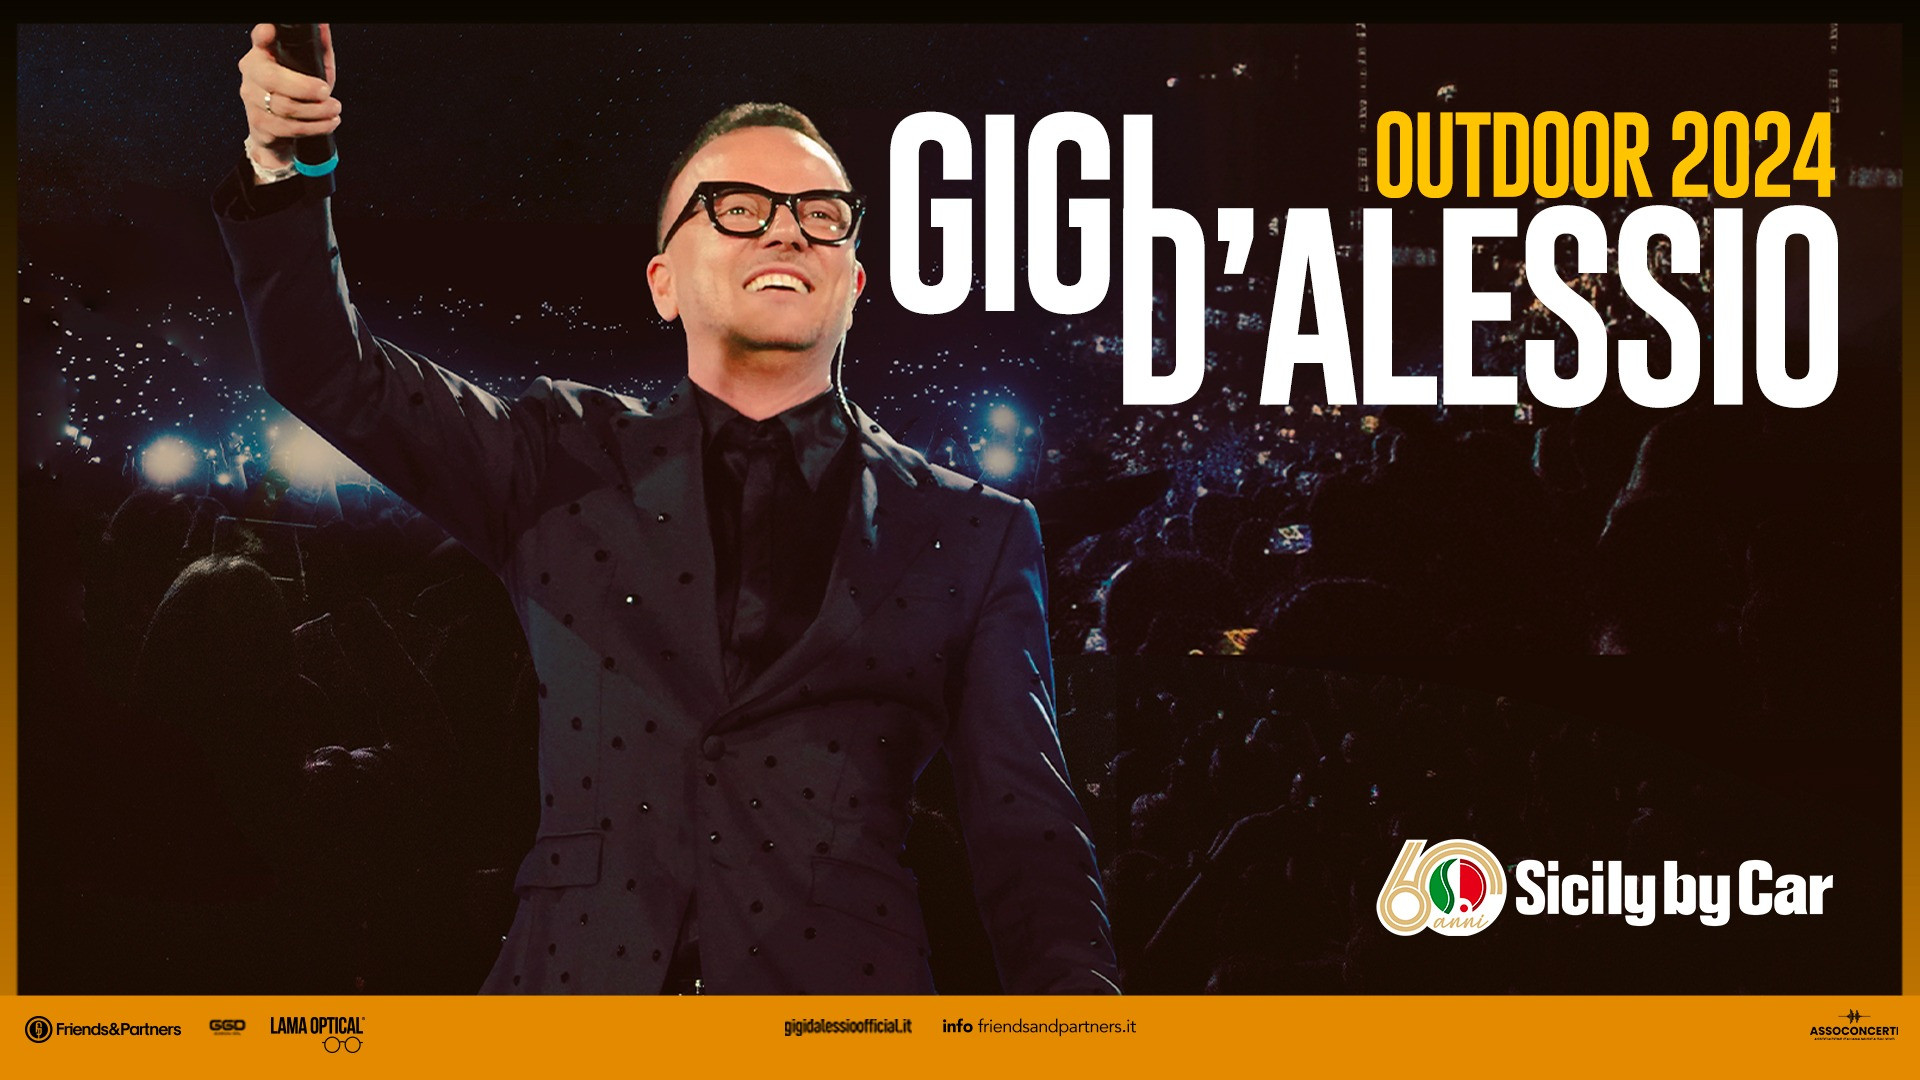 Dopo Palermo, altri due concerti per Gigi D’Alessio